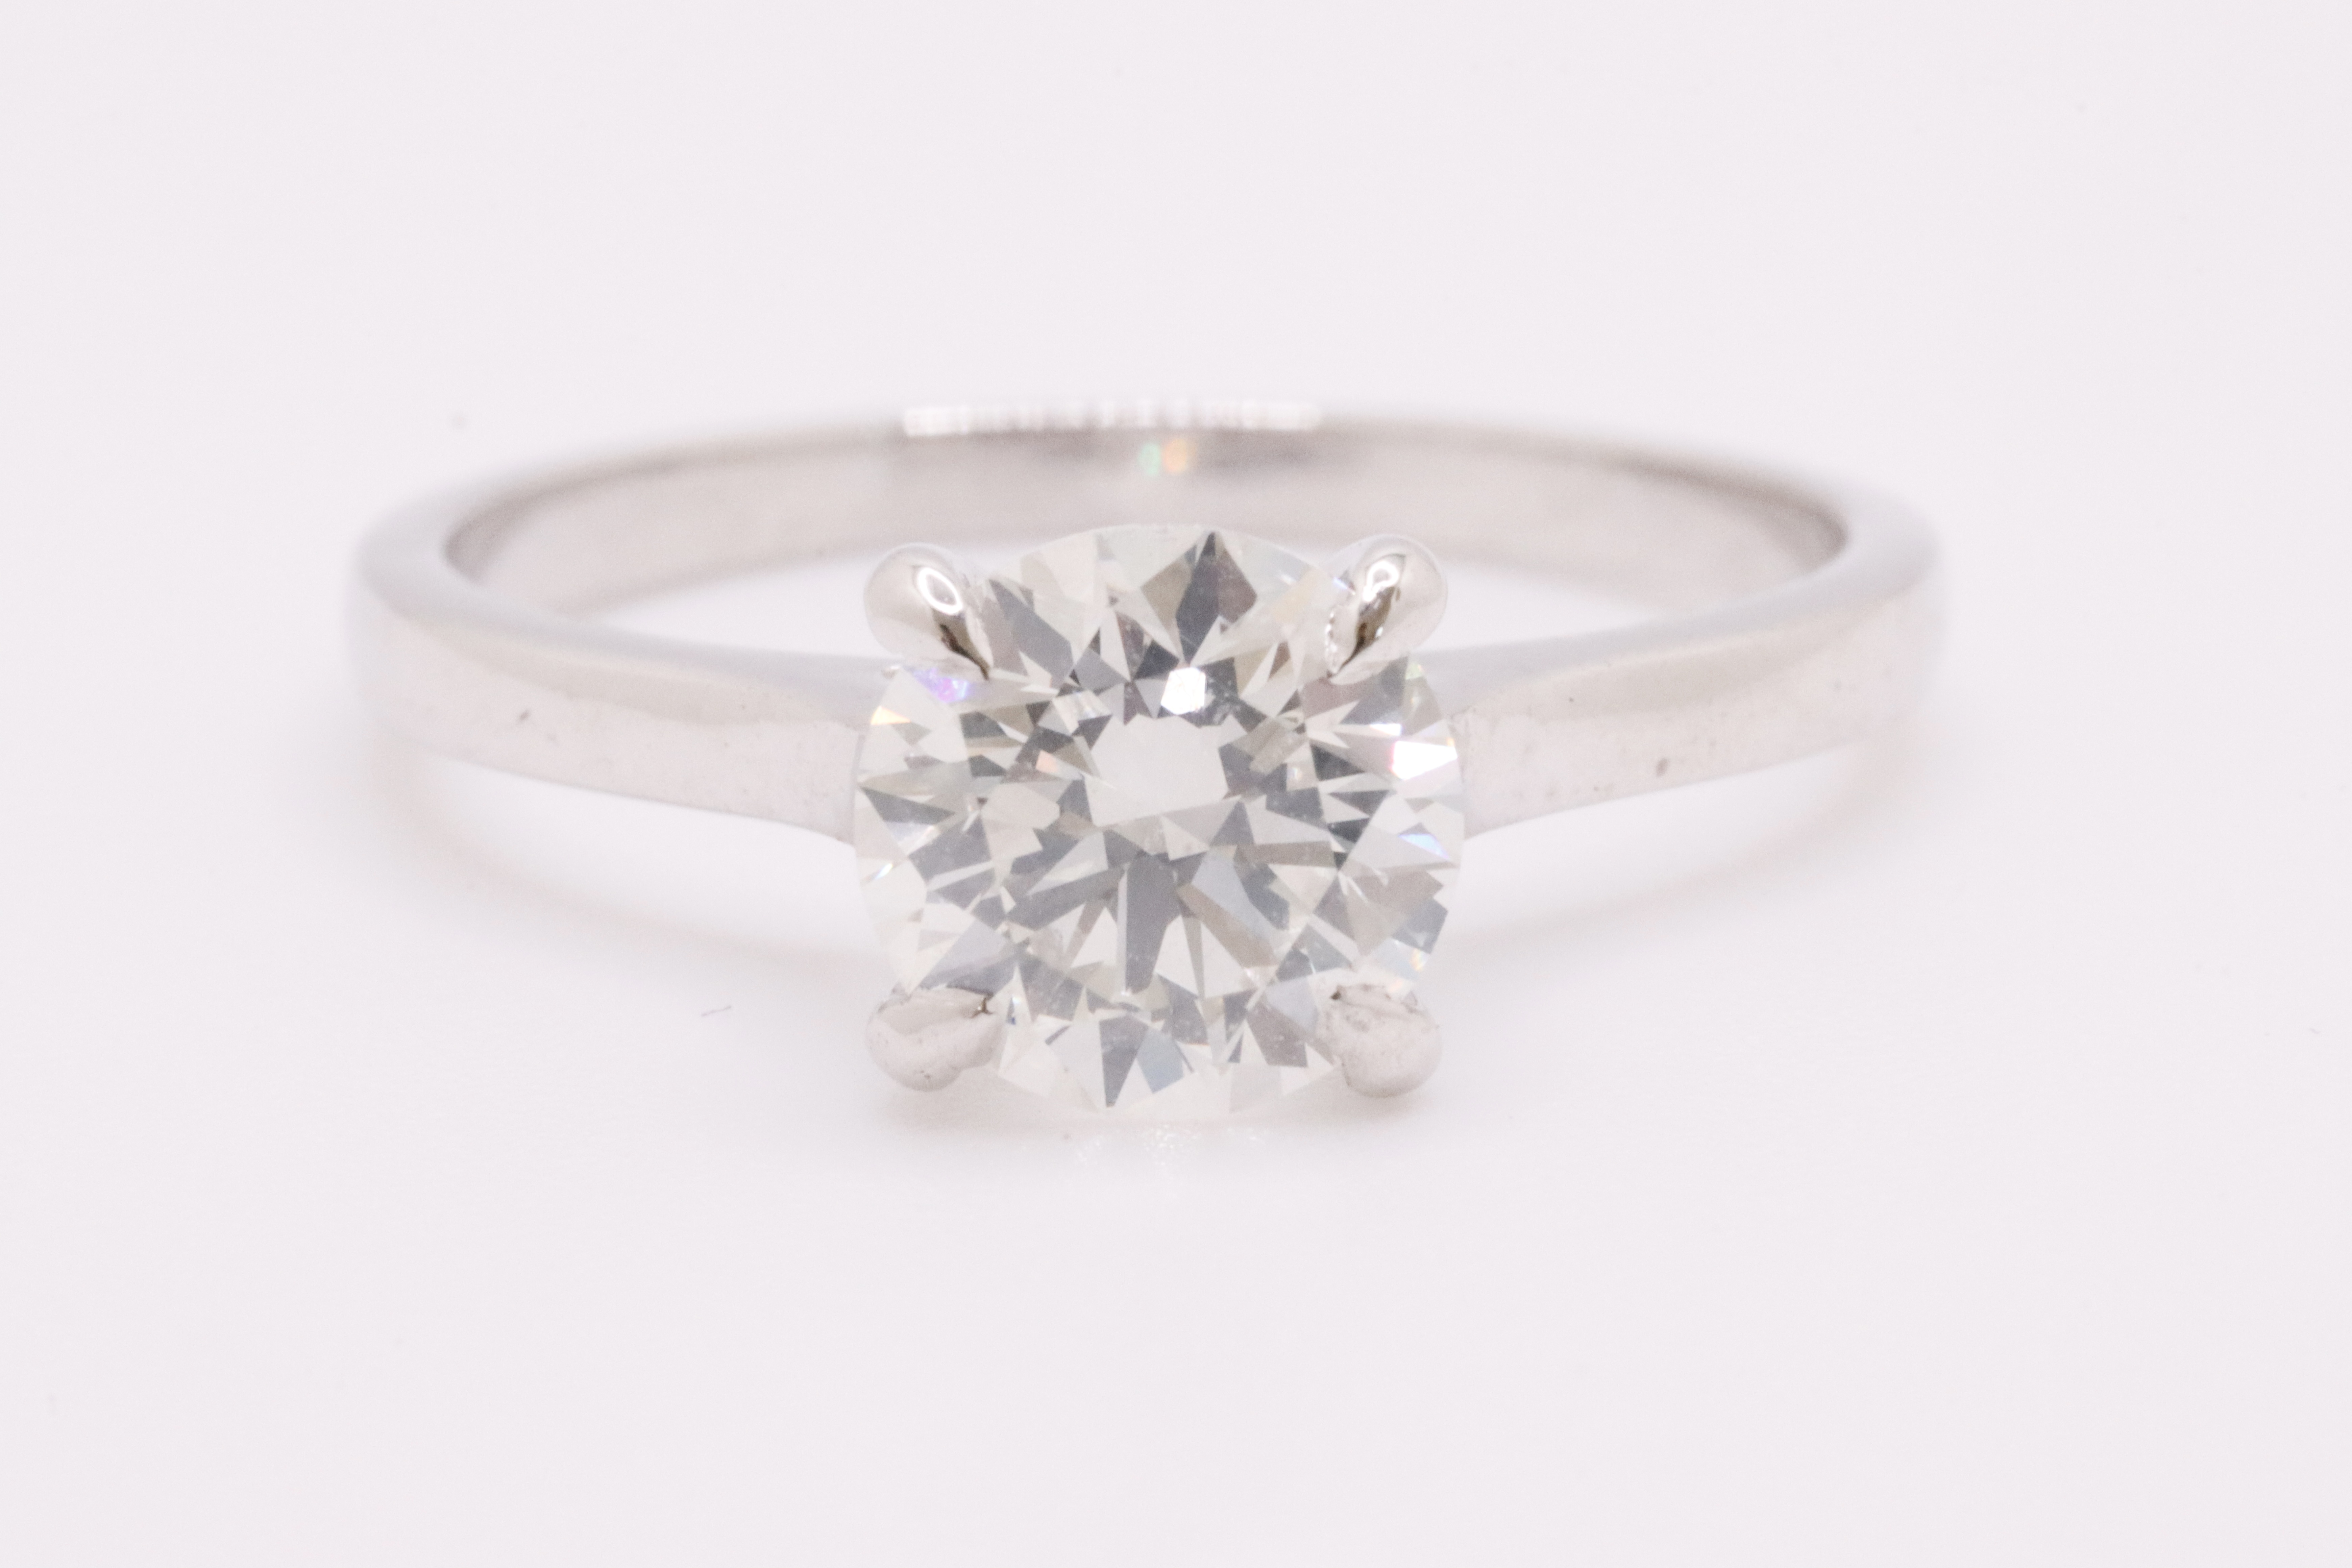 Round Brilliant Cut Natural Diamond Ring 1.09 Carat I Colour SI2 Clarity EX EX EX - GIA - Image 2 of 10